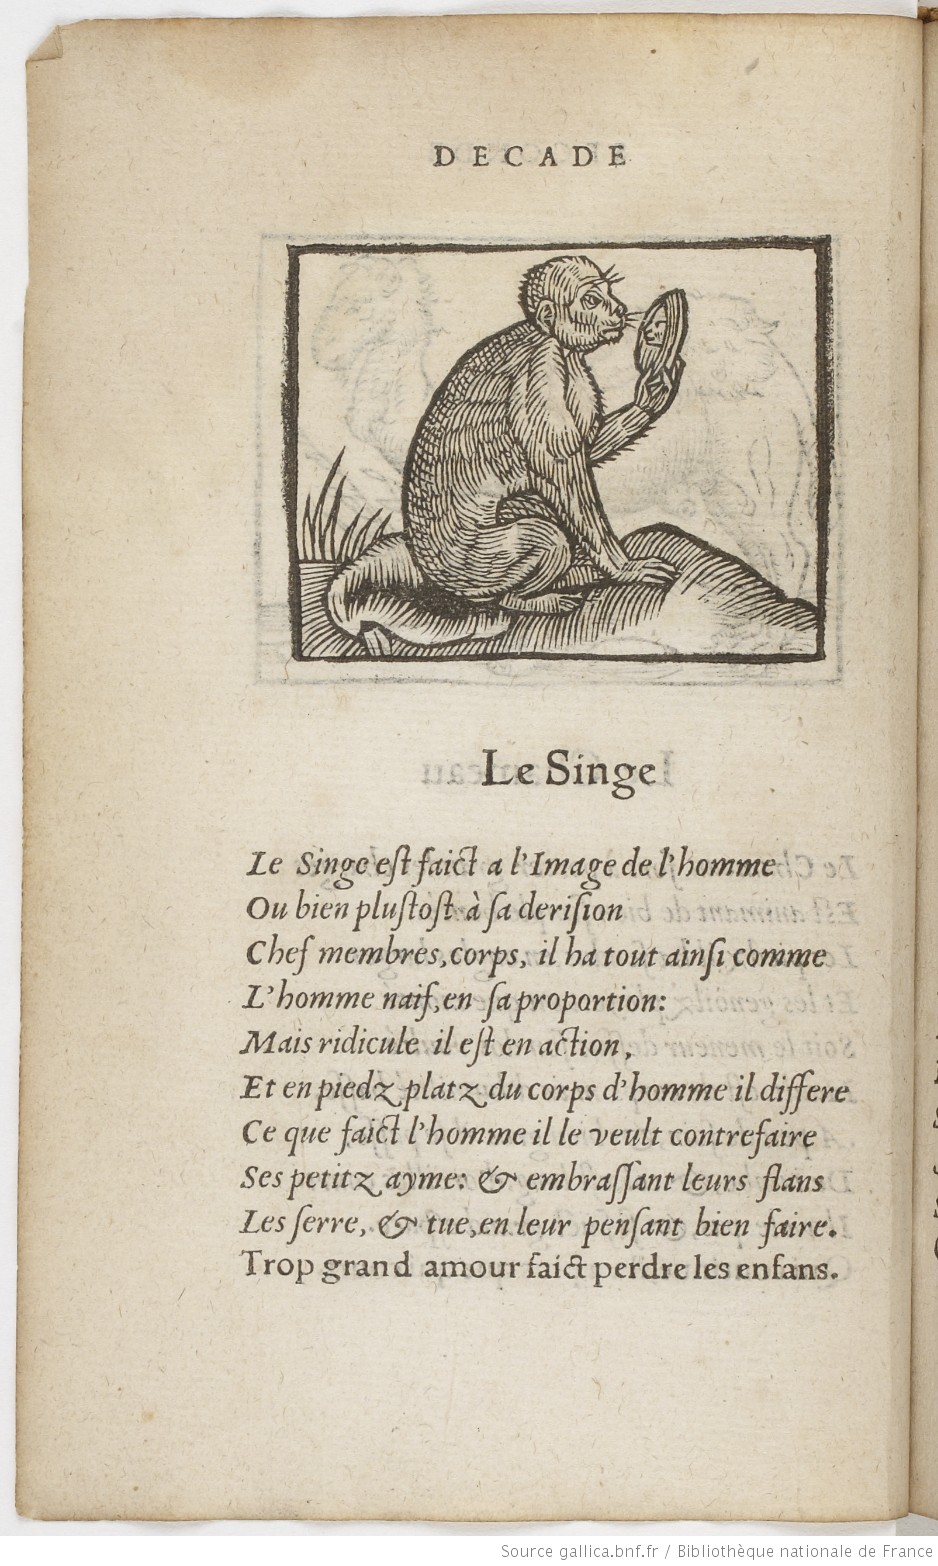 1549 Barthelemy Aneau, Decades de la description, forme et vertu naturelle des animaulx, tant raisonnables que brutz Lyon vue 38 Gallica